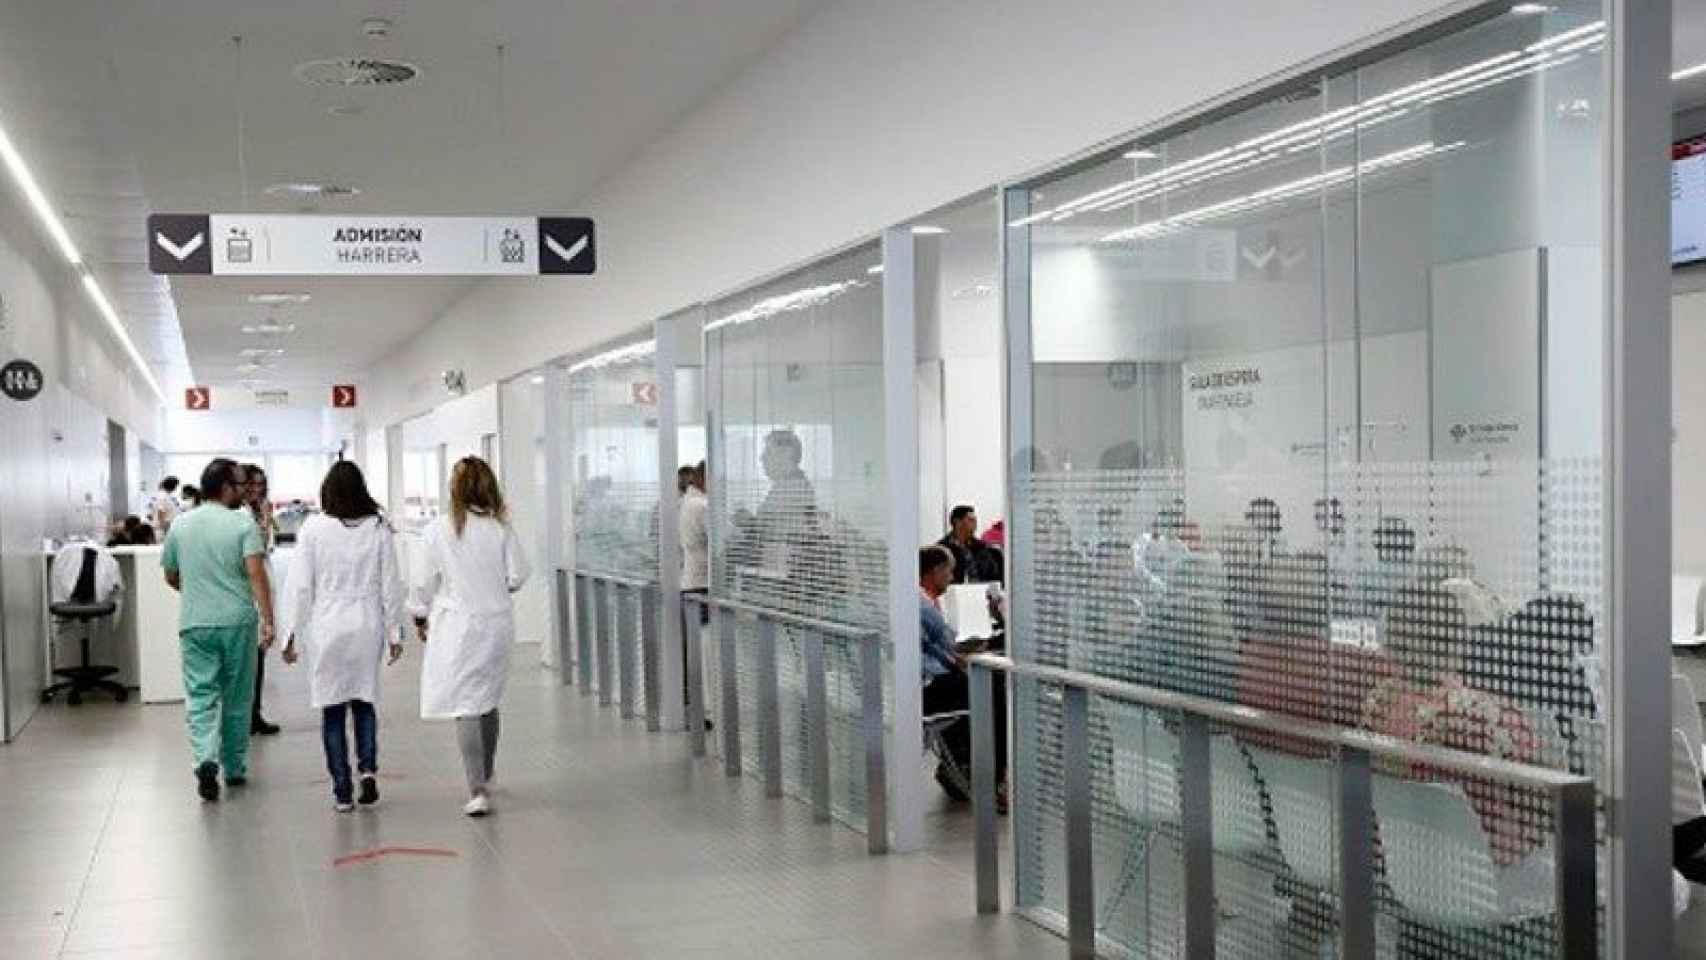 El servicio de urgencias del Complejo Hospitalario de Navarrra, saturado desde su inauguración.